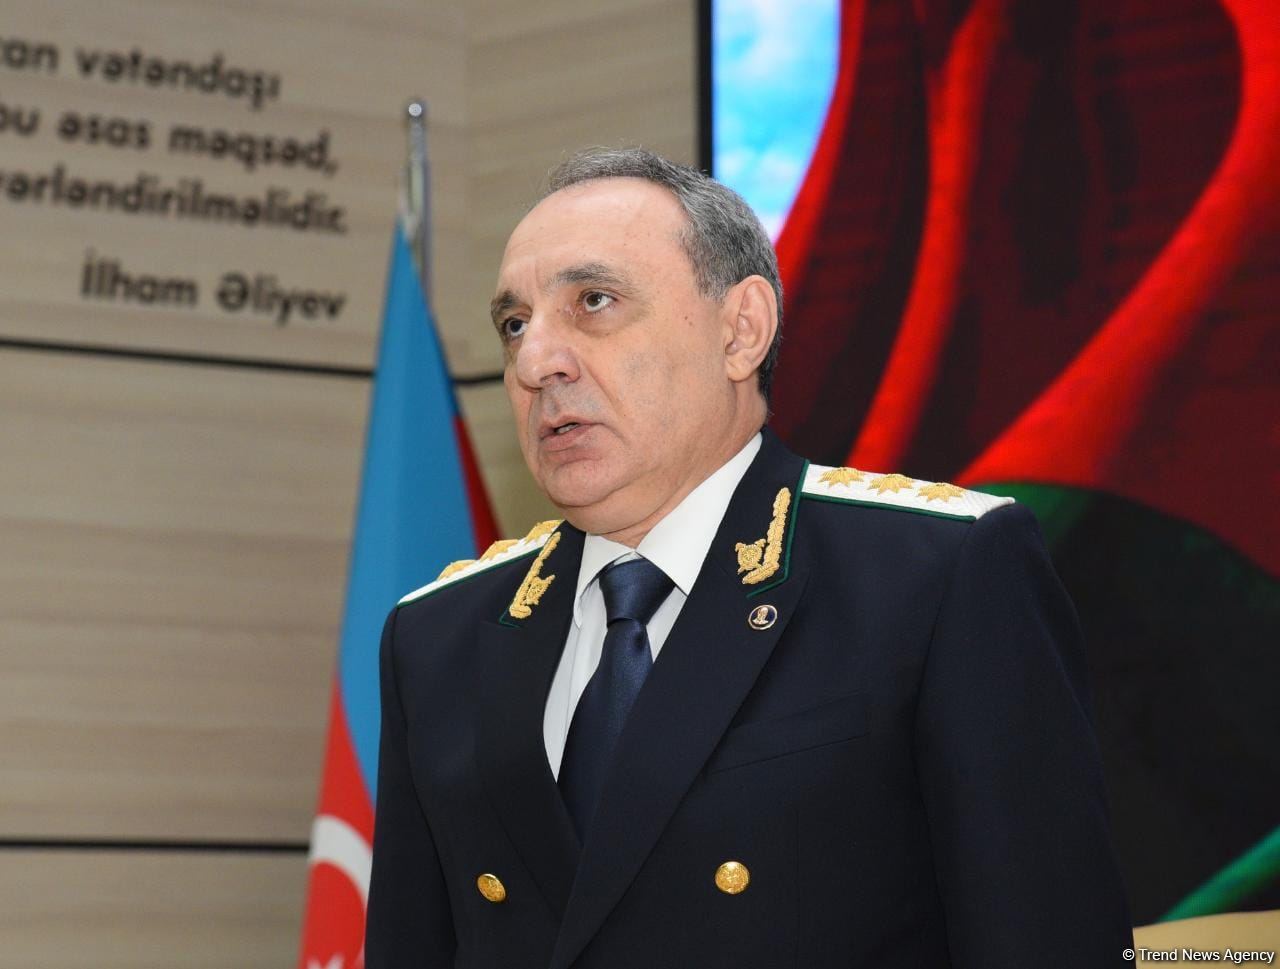 Завершены следственные действия по уголовному делу в отношении армянских сепаратистов - Кямран Алиев